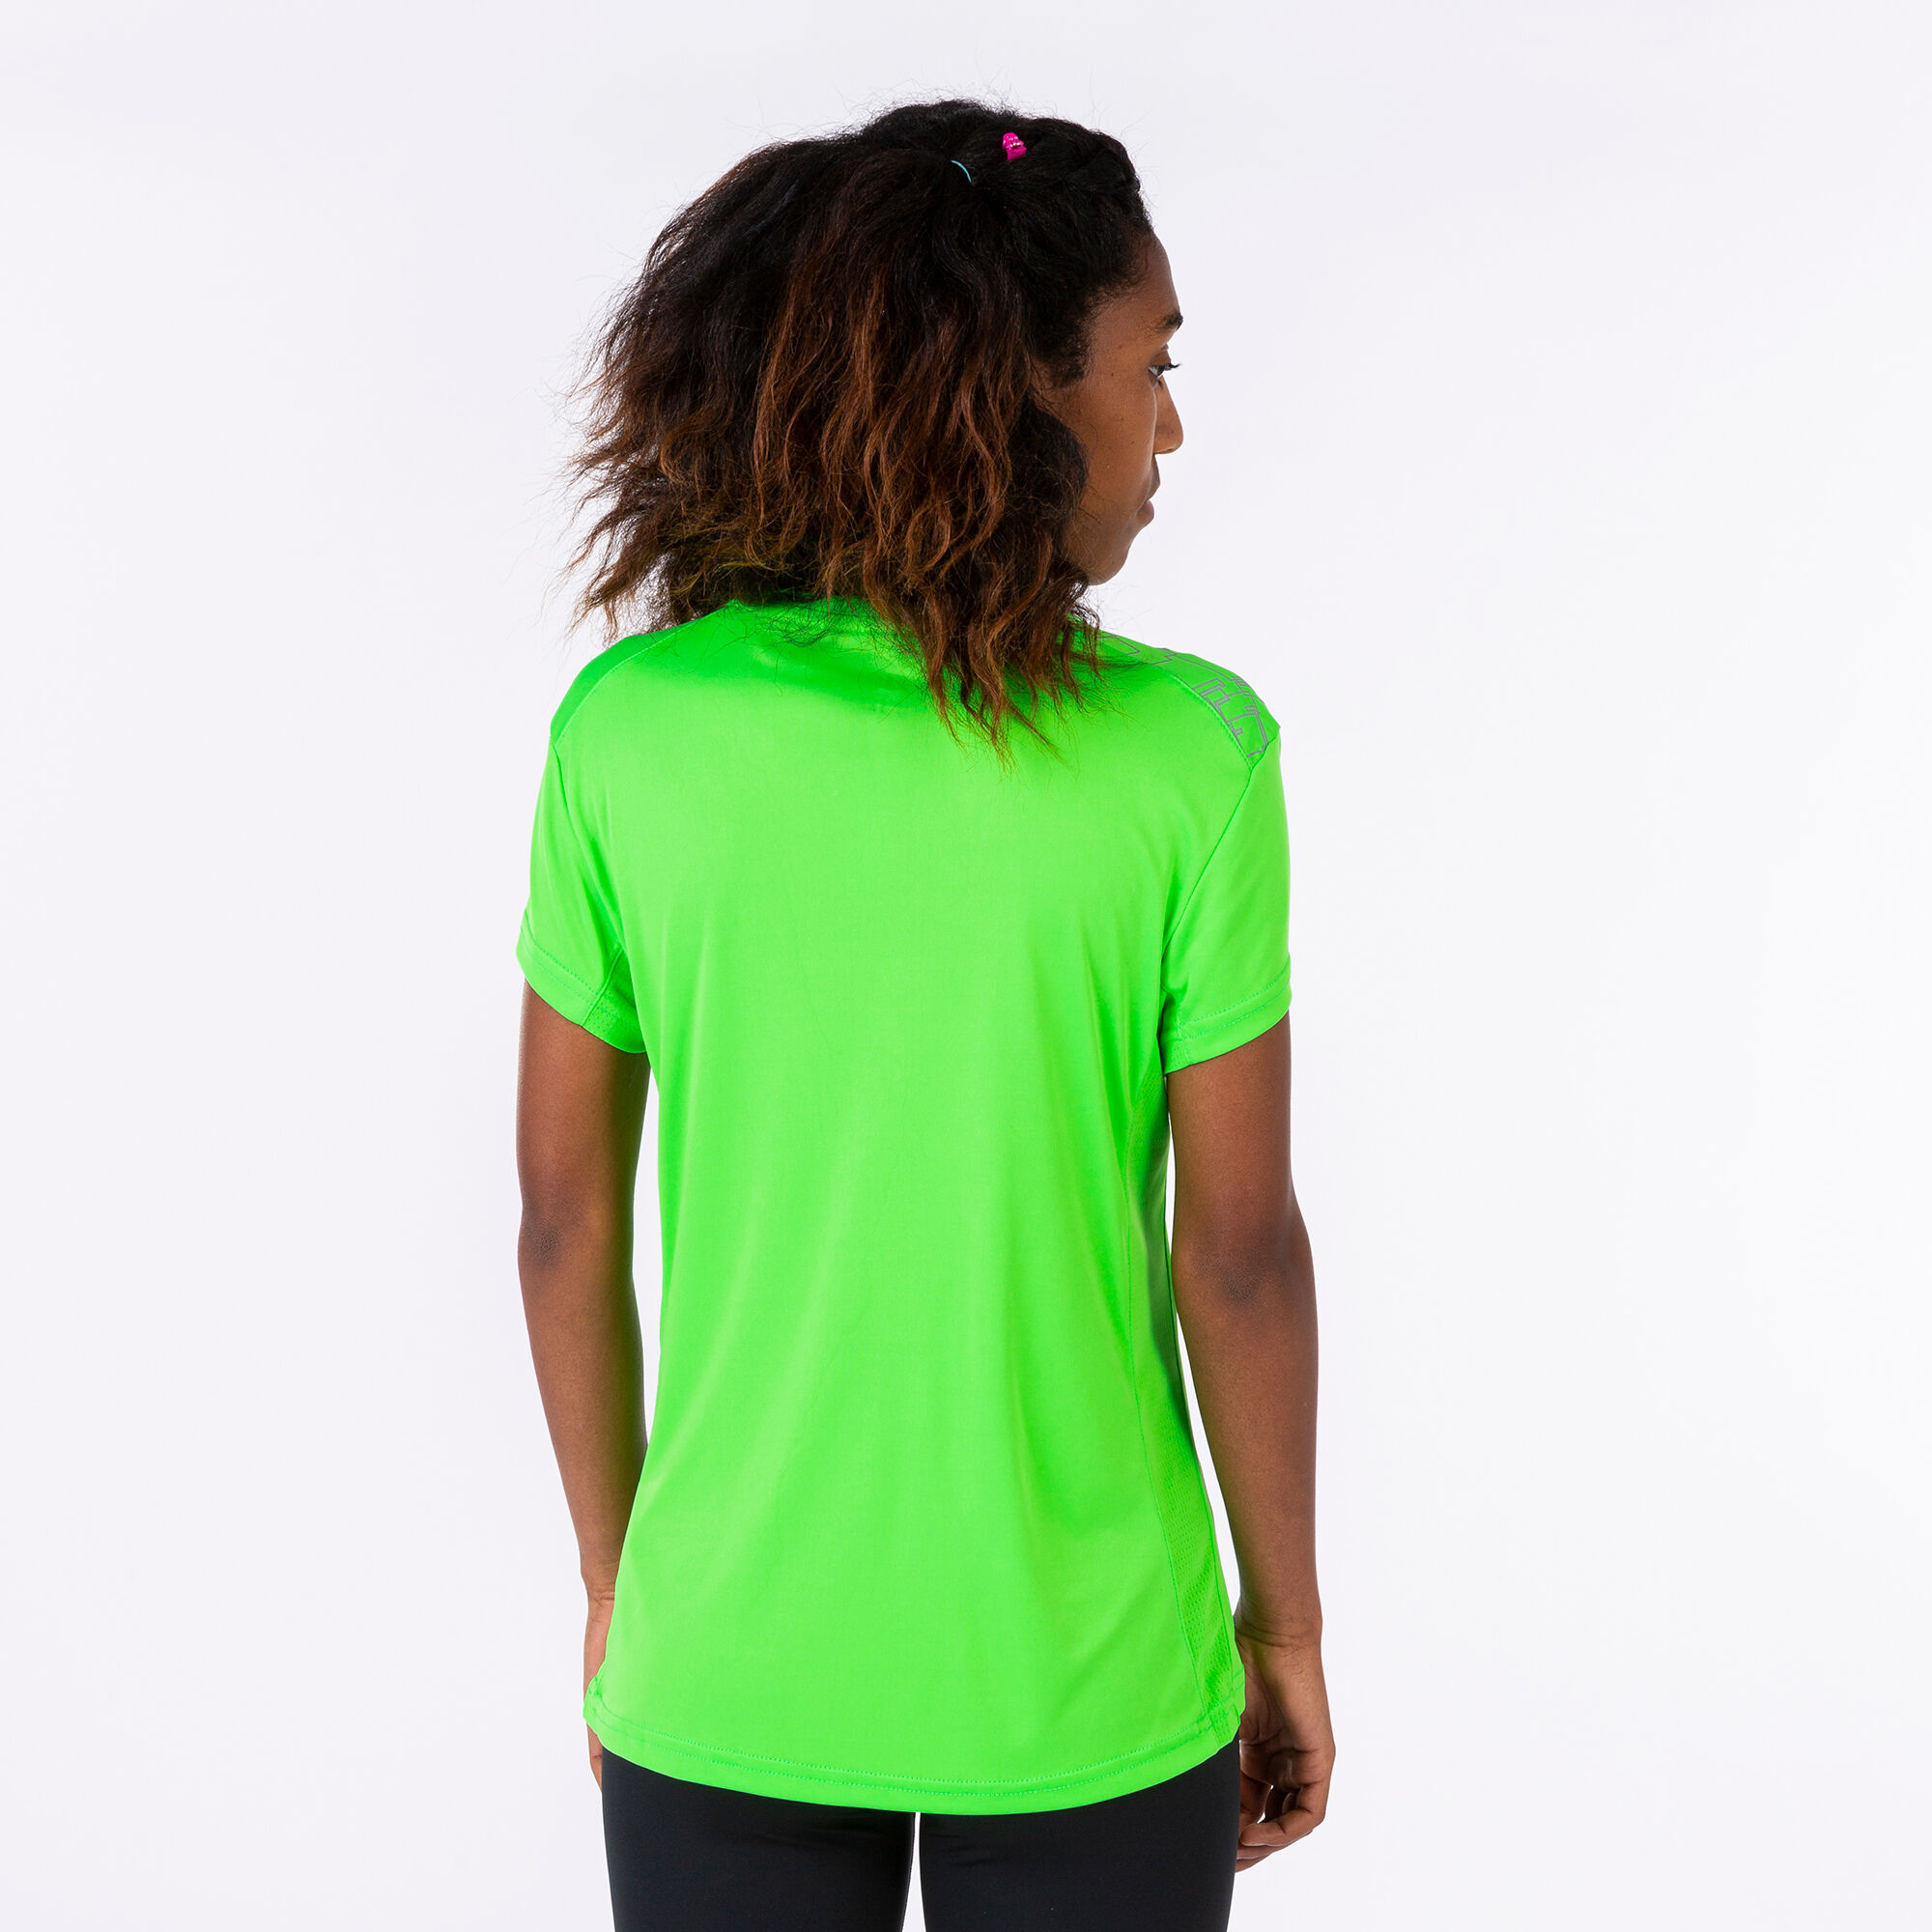 Camiseta corta mujer Elite verde flúor | JOMA®